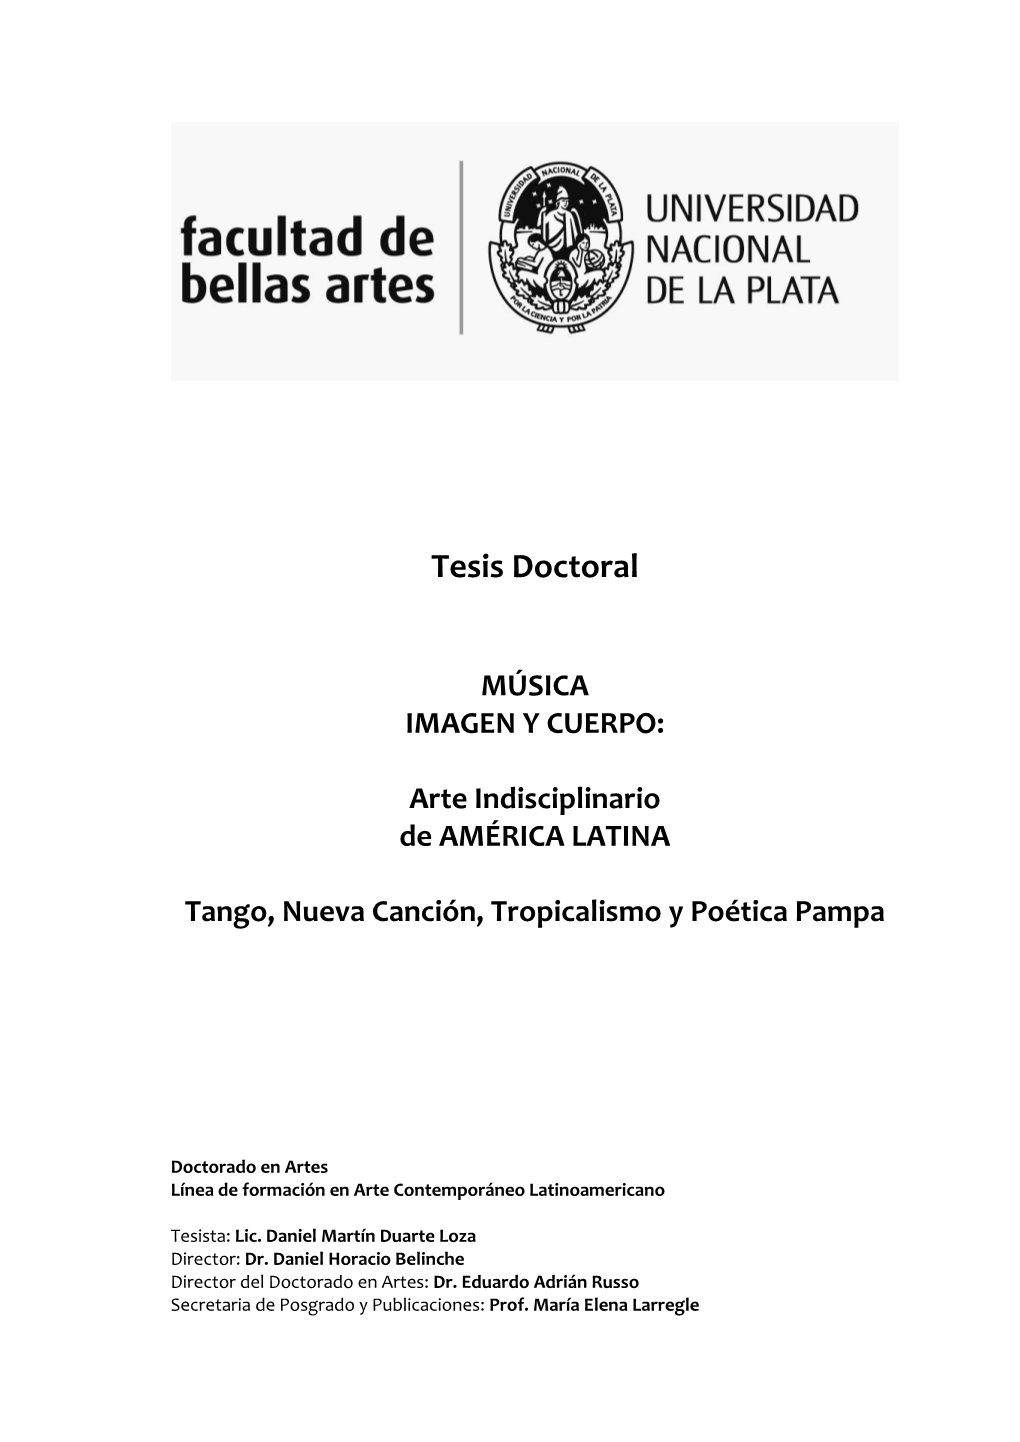 MÚSICA IMAGEN Y CUERPO: Arte Indisciplinario De AMÉRICA LATINA Tango, Nueva Canción, Tropicalismo Y Poética Pampa